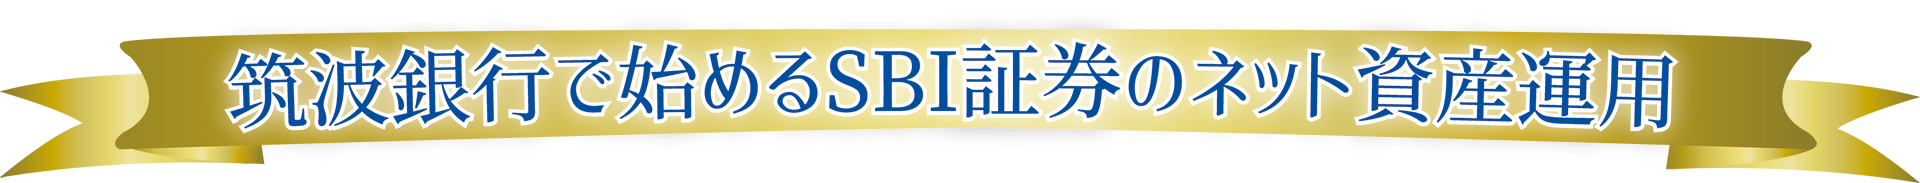 筑波銀行で始めるネット証券総合評価1位のSBI証券のネット資産運用